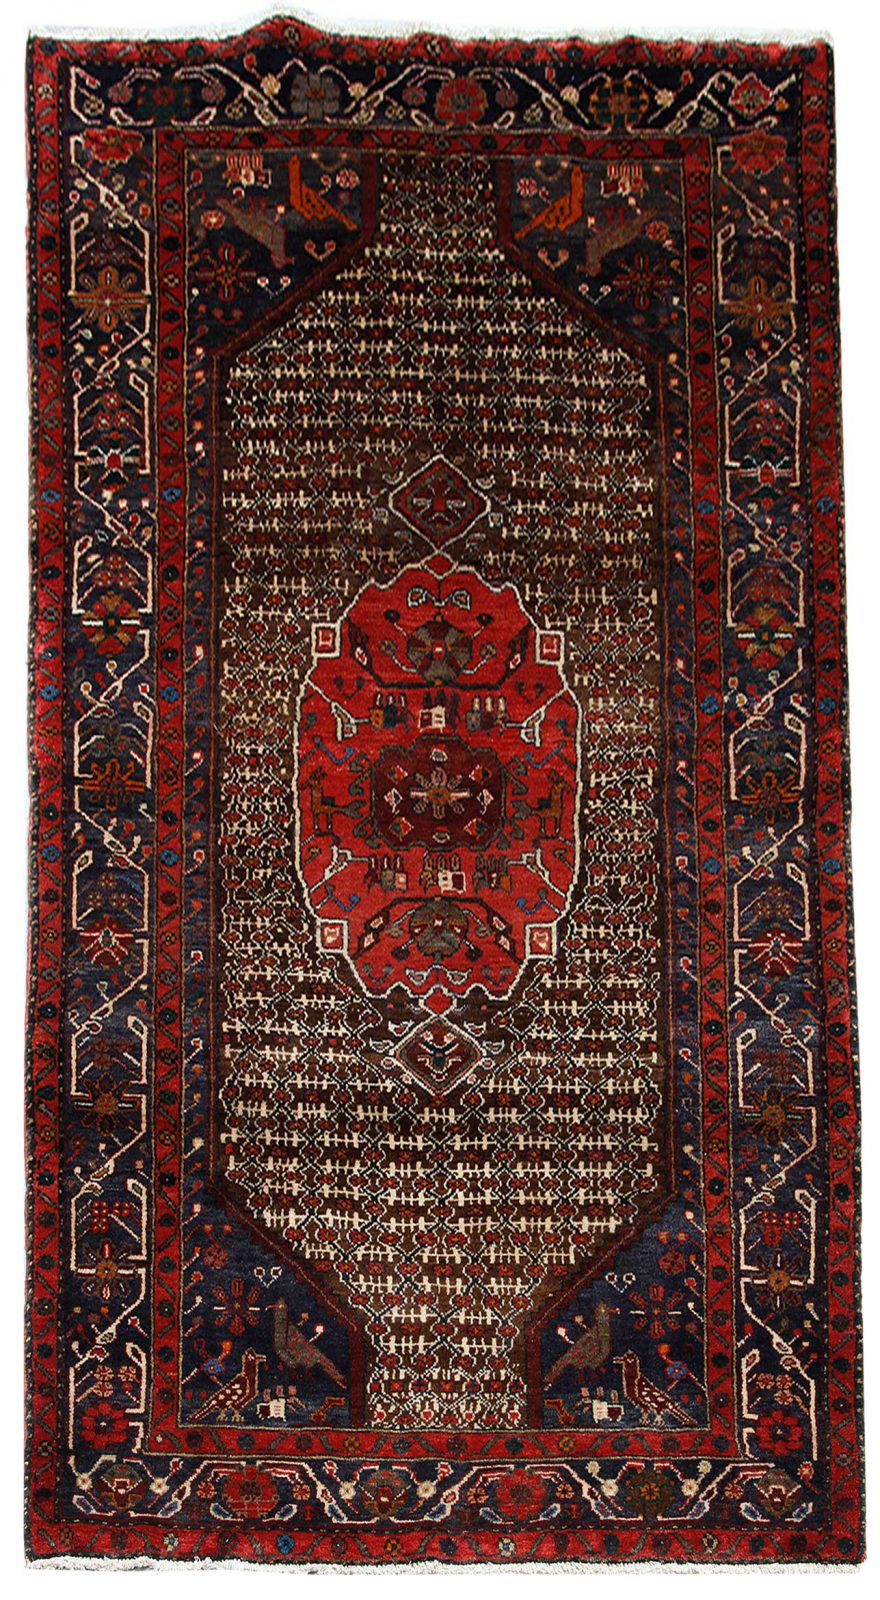 فرش دستباف سنقر طرح بندي ترنج سایز پرده اي۲٫۶۵×۱٫۴۳ رنگ زمینه شتري رنگ حاشیه سرمه اي کد ۴۳۴۸۵